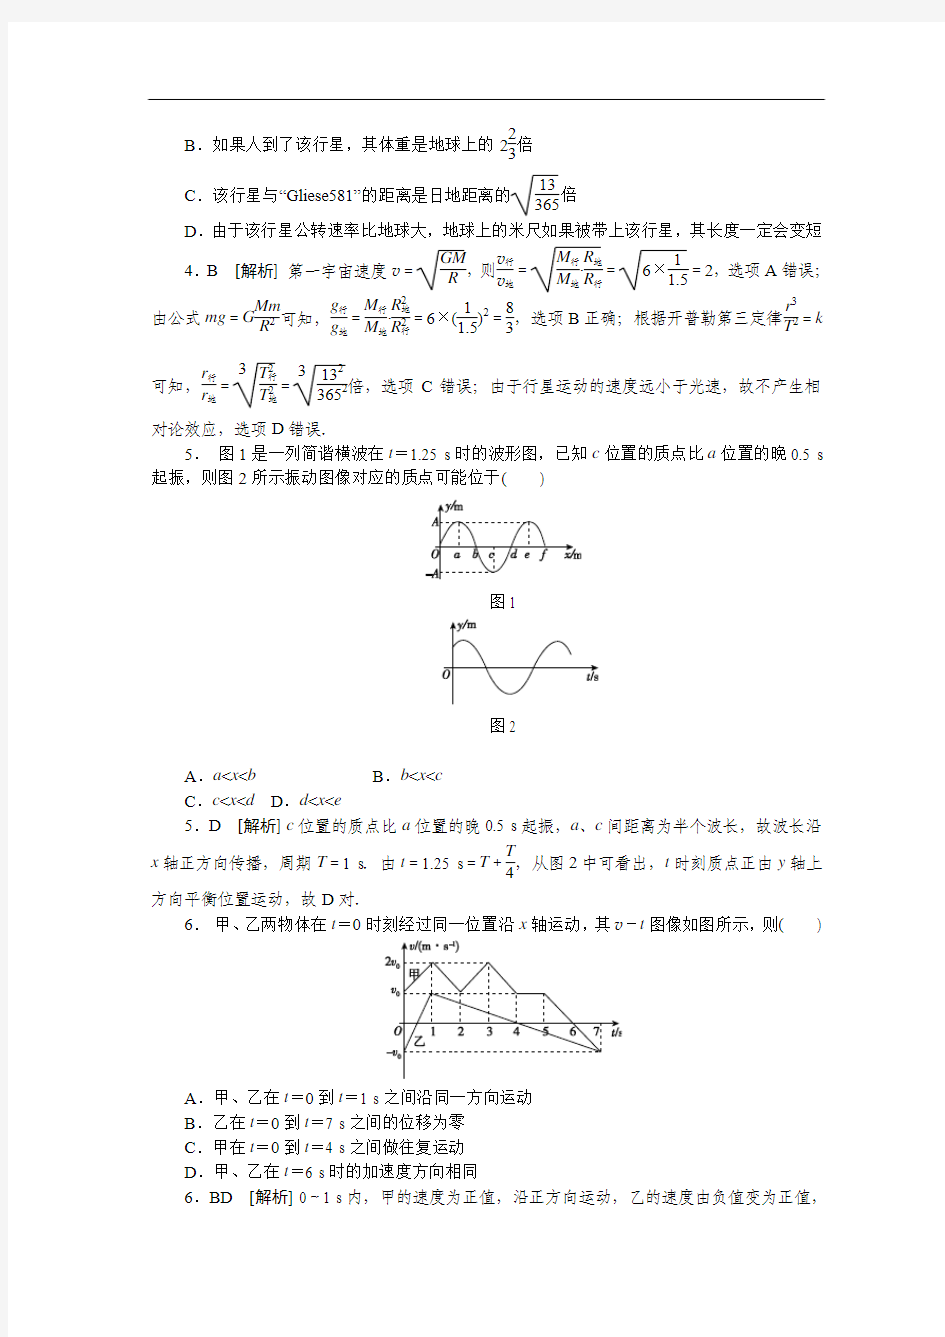 2013年普通高等学校招生统一考试四川省理综卷物理部分